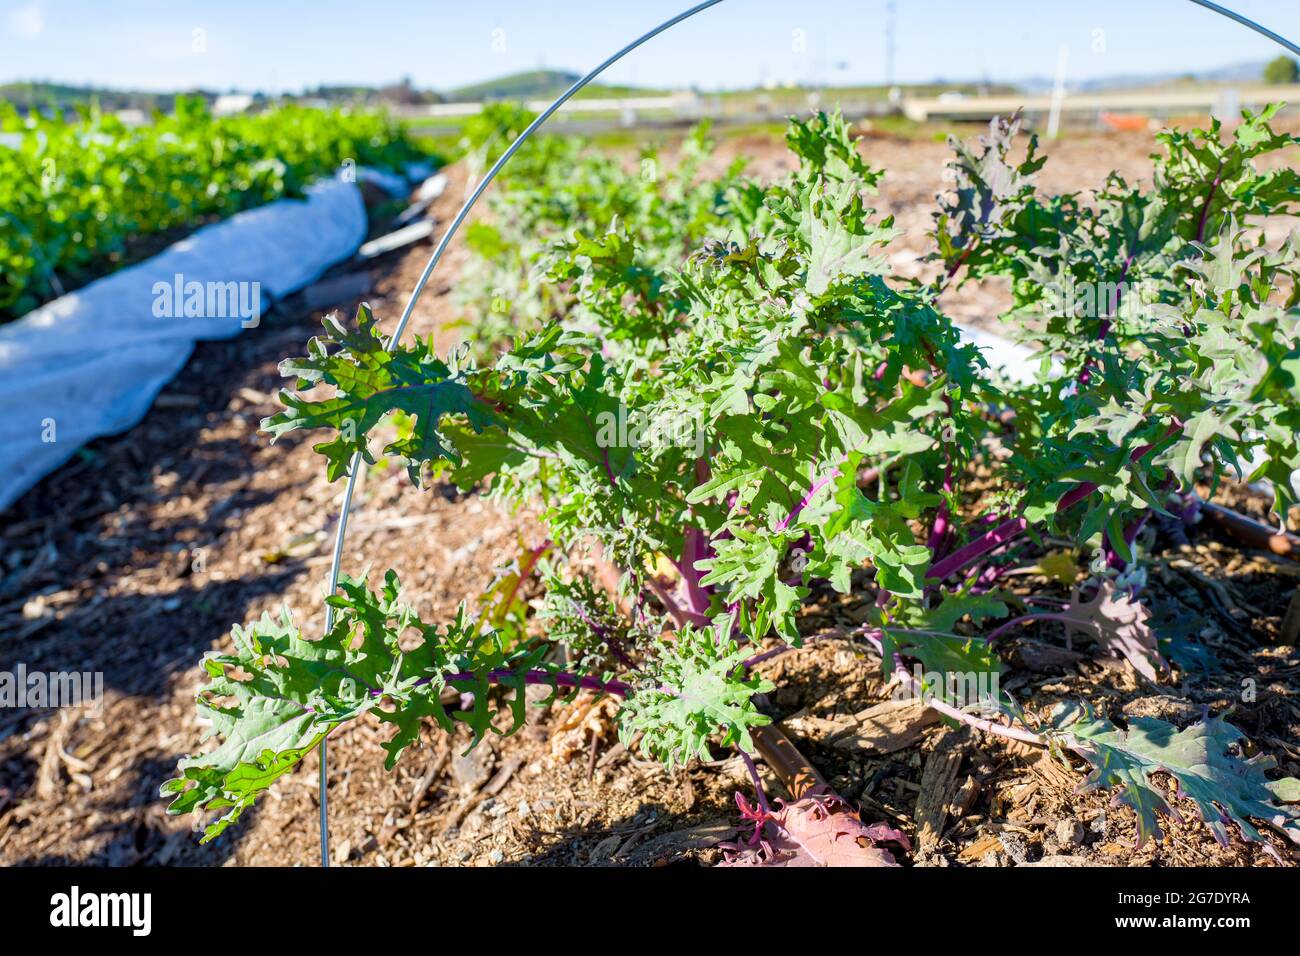 Las plantas y el equipo son visibles en Coco San Sustainable Farm, una granja experimental que utiliza agua reciclada para cultivar plantas para las escuelas locales en Martinez, California, 24 de enero de 2019. () Foto de stock